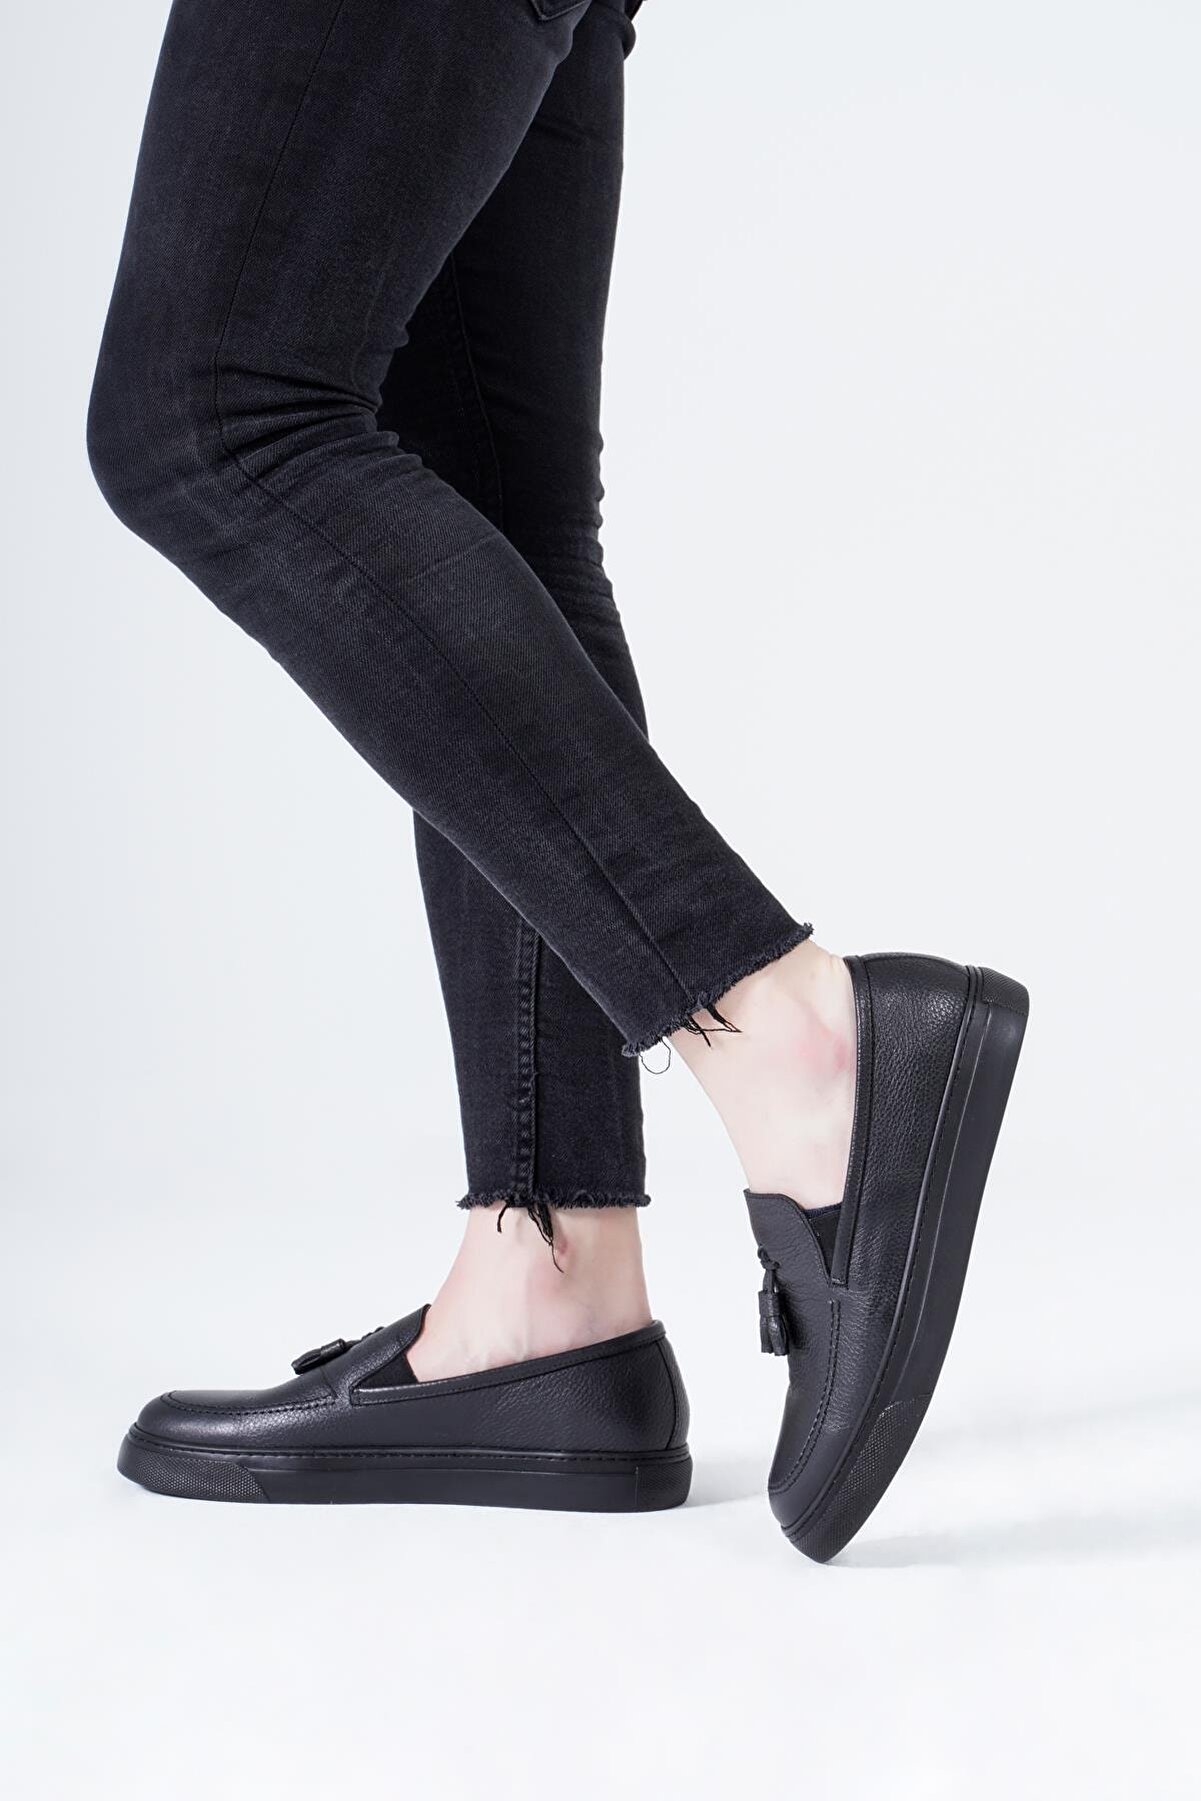 CZ London Hakiki Deri Erkek-siyah Loafer Sneakers – Püskül Comfort Ped Spor Ayakkabı